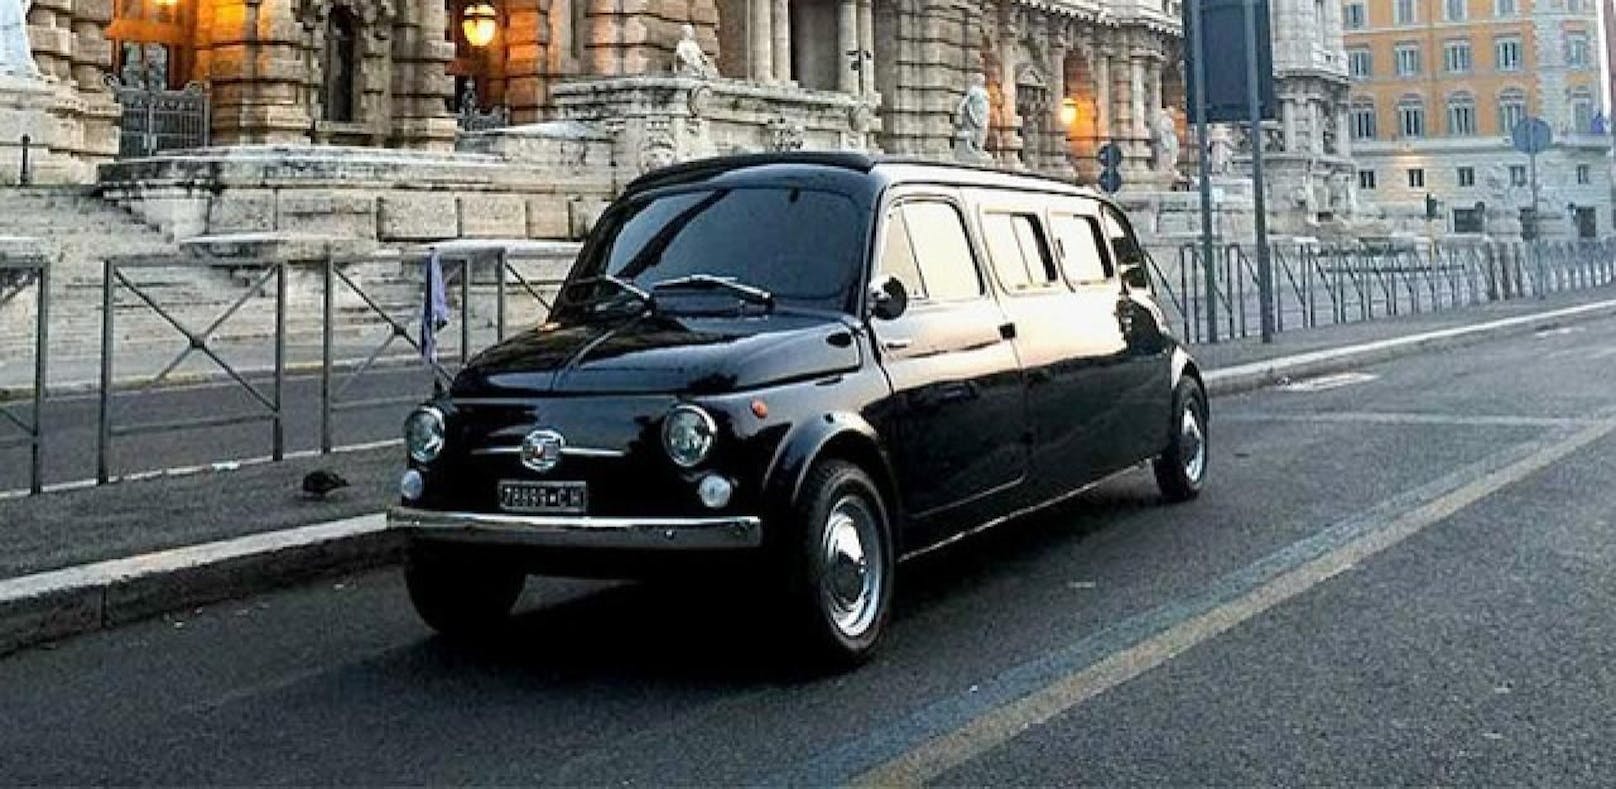 Cruisen wie Zoolander: Fiat-500-Limo zu haben